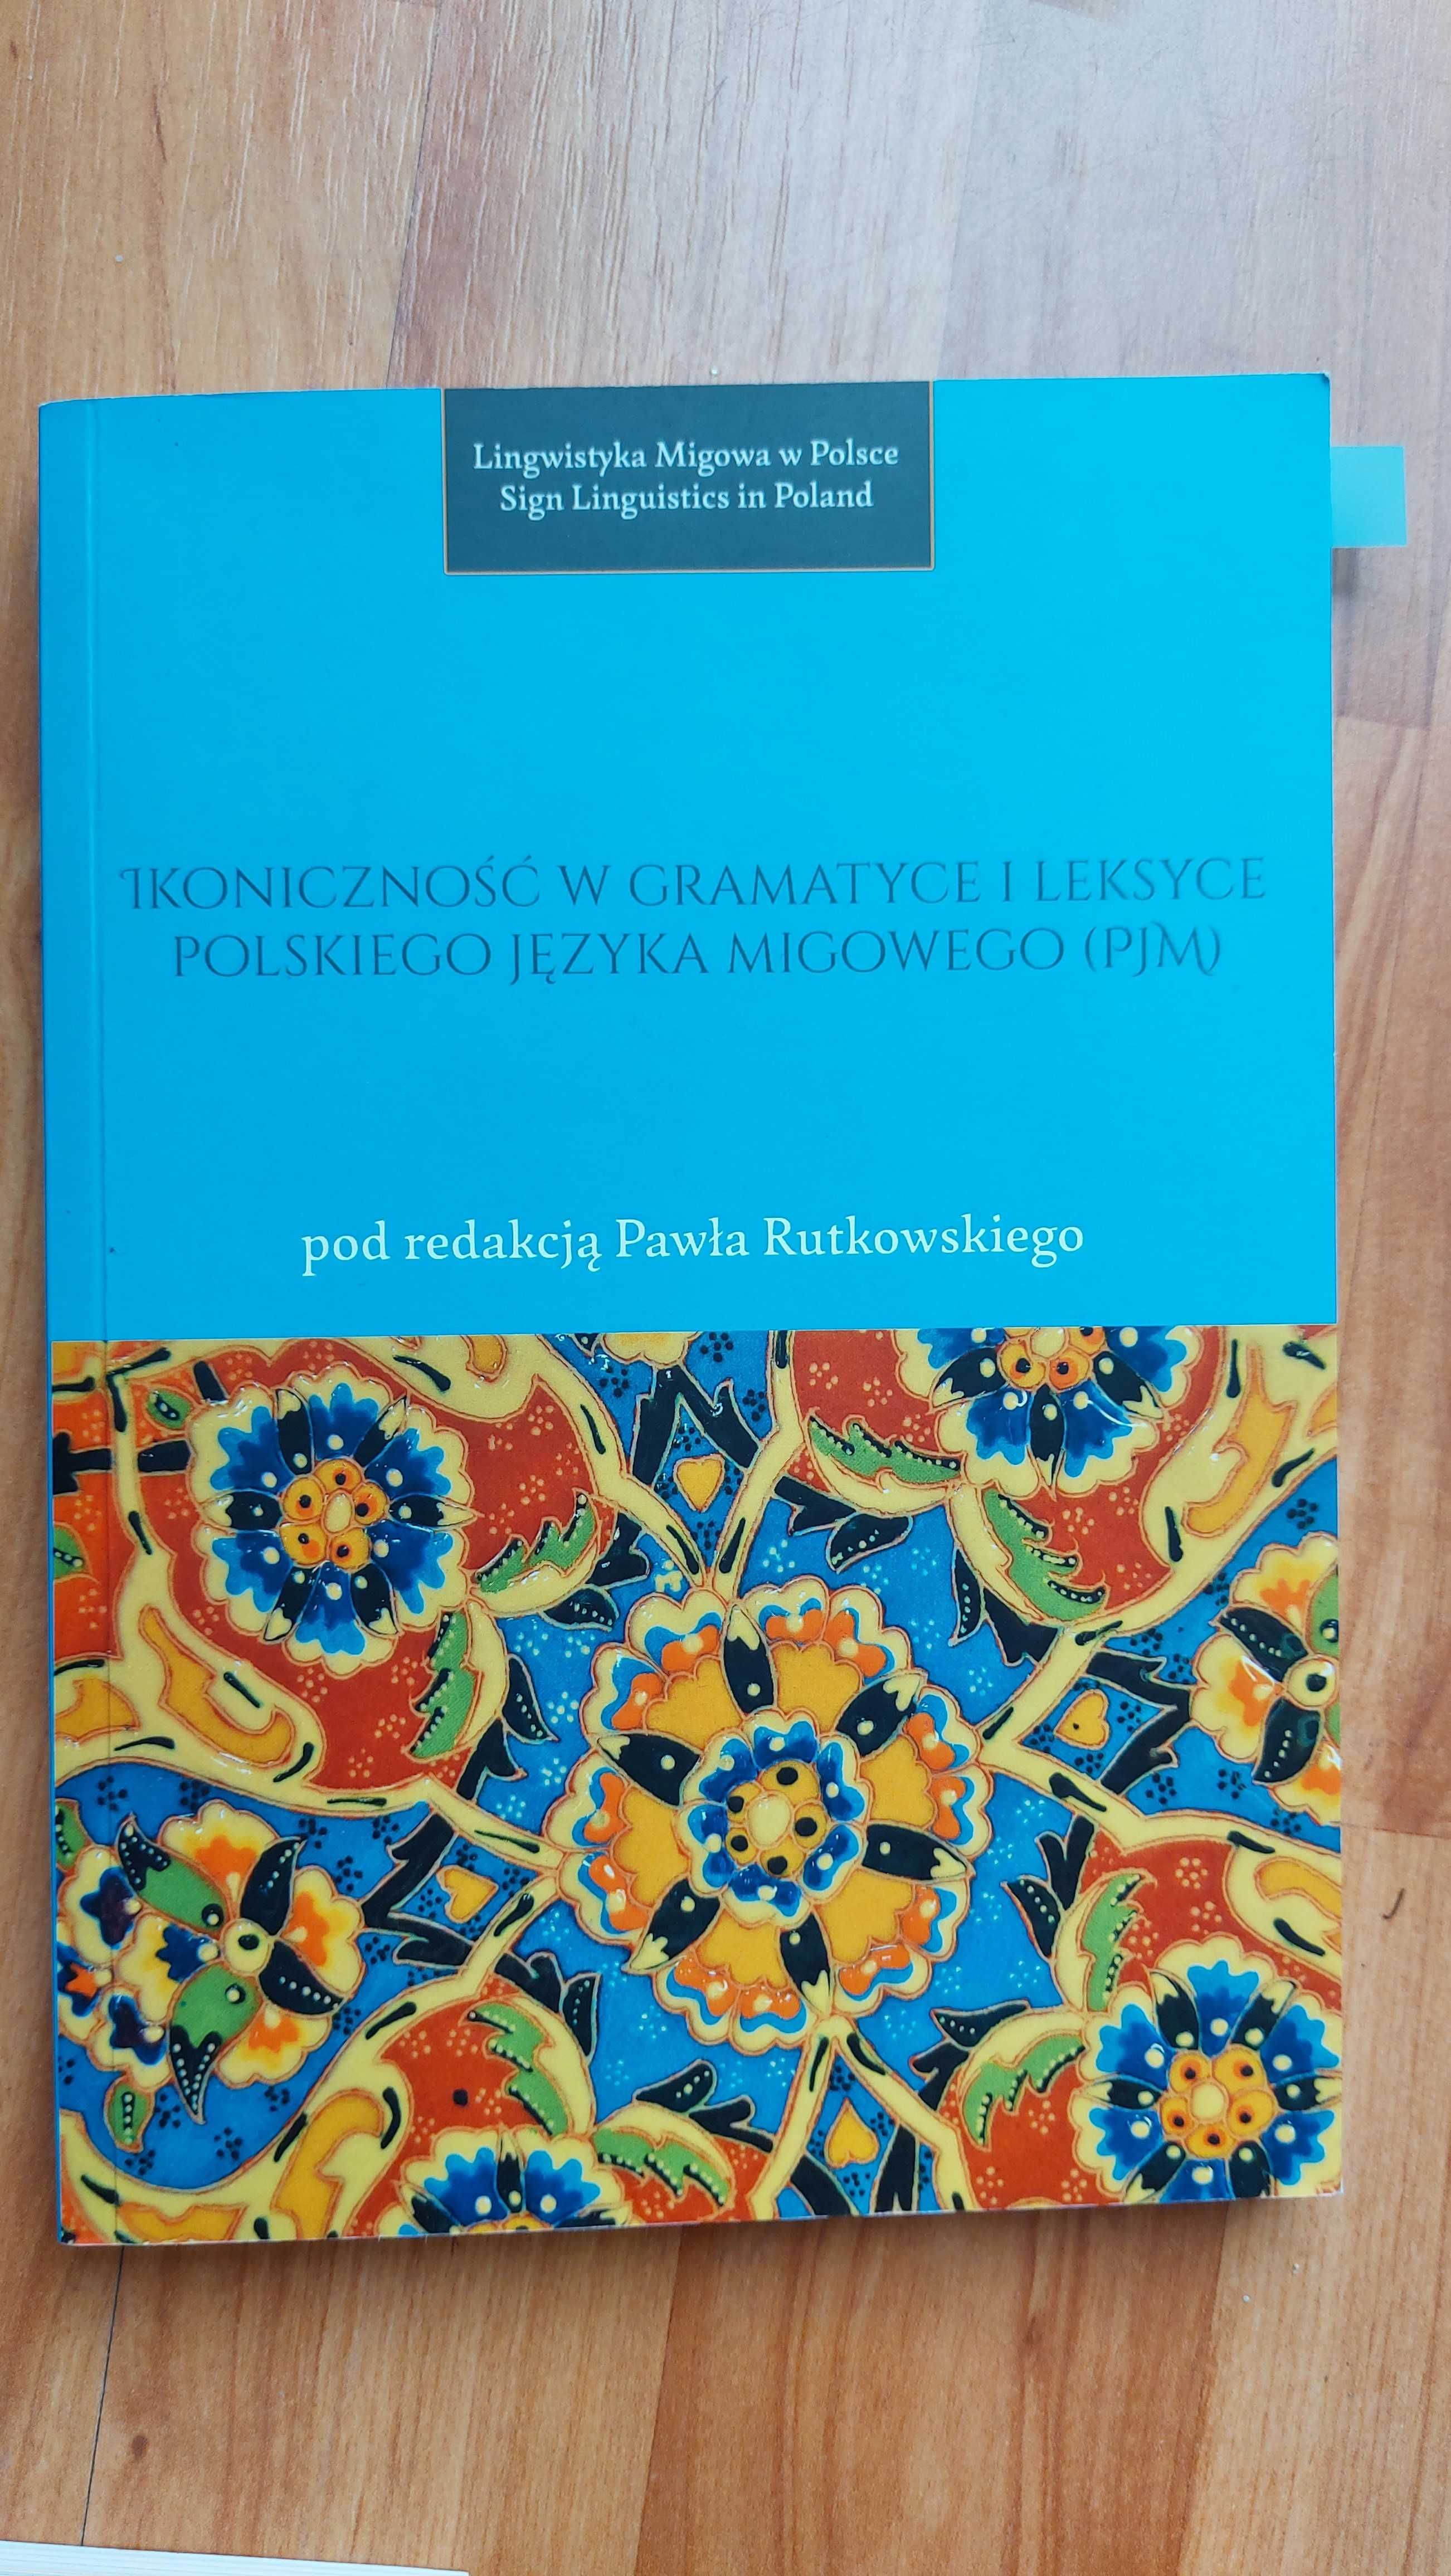 P. Rutkowski: Ikoniczność w gramatyce (.) polskiego języka migowego